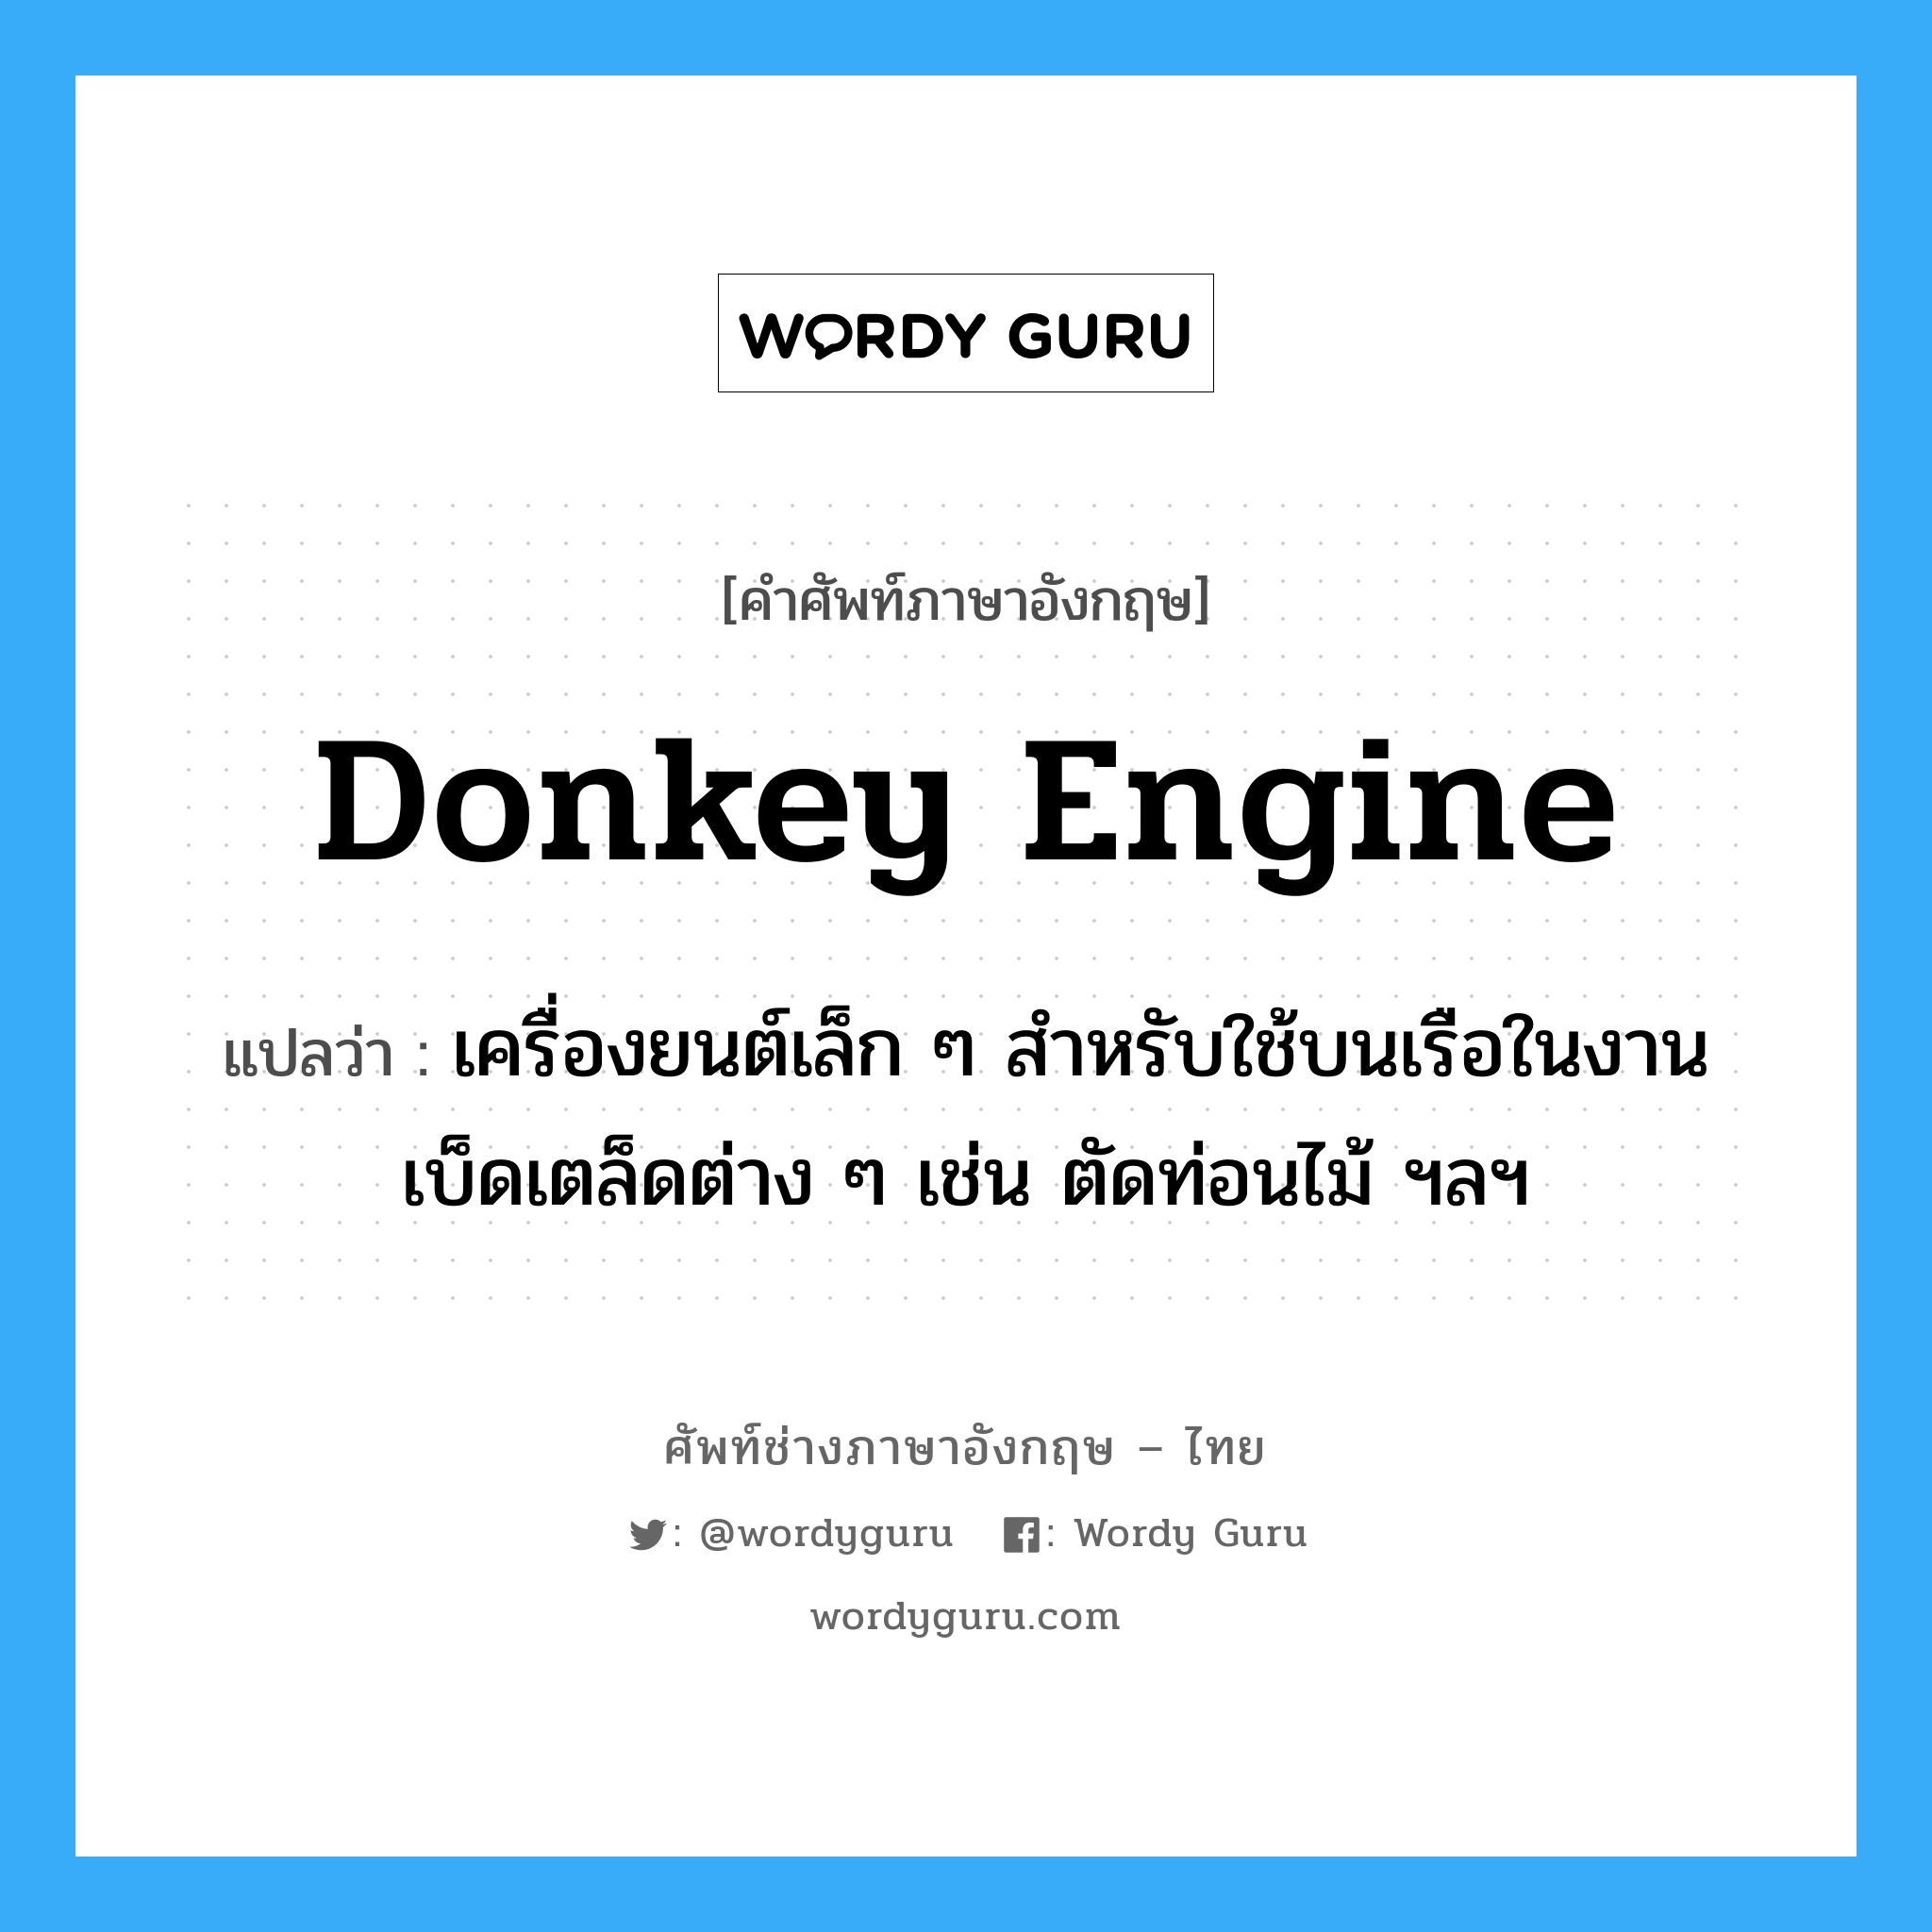 donkey-engine แปลว่า?, คำศัพท์ช่างภาษาอังกฤษ - ไทย donkey engine คำศัพท์ภาษาอังกฤษ donkey engine แปลว่า เครื่องยนต์เล็ก ๆ สำหรับใช้บนเรือในงานเบ็ดเตล็ดต่าง ๆ เช่น ตัดท่อนไม้ ฯลฯ